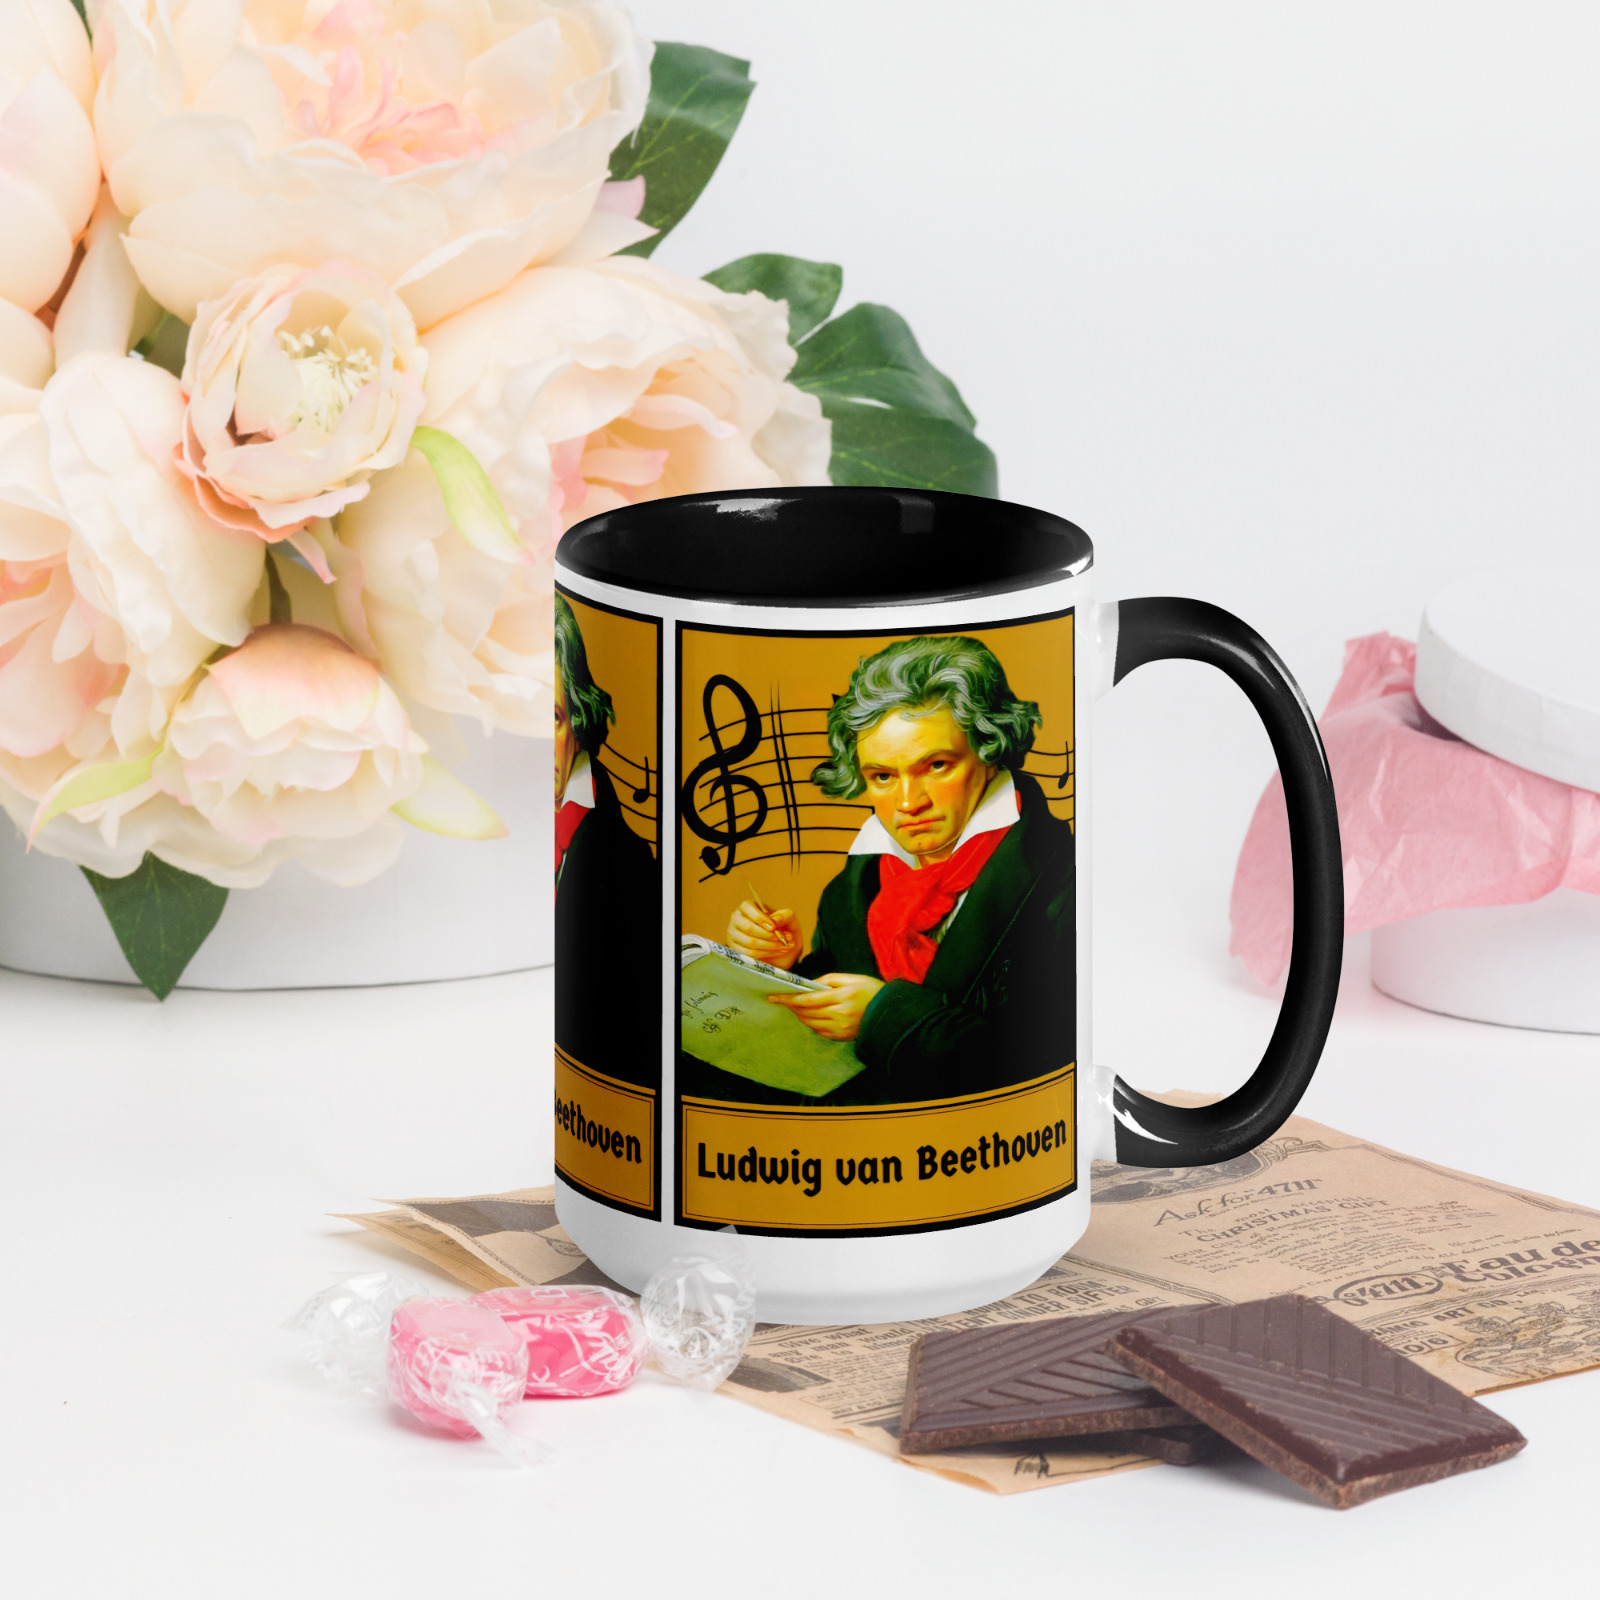 Ludwig van Beethoven 1770-1827 German composer NEW High-Quality Coffee Mug 15oz